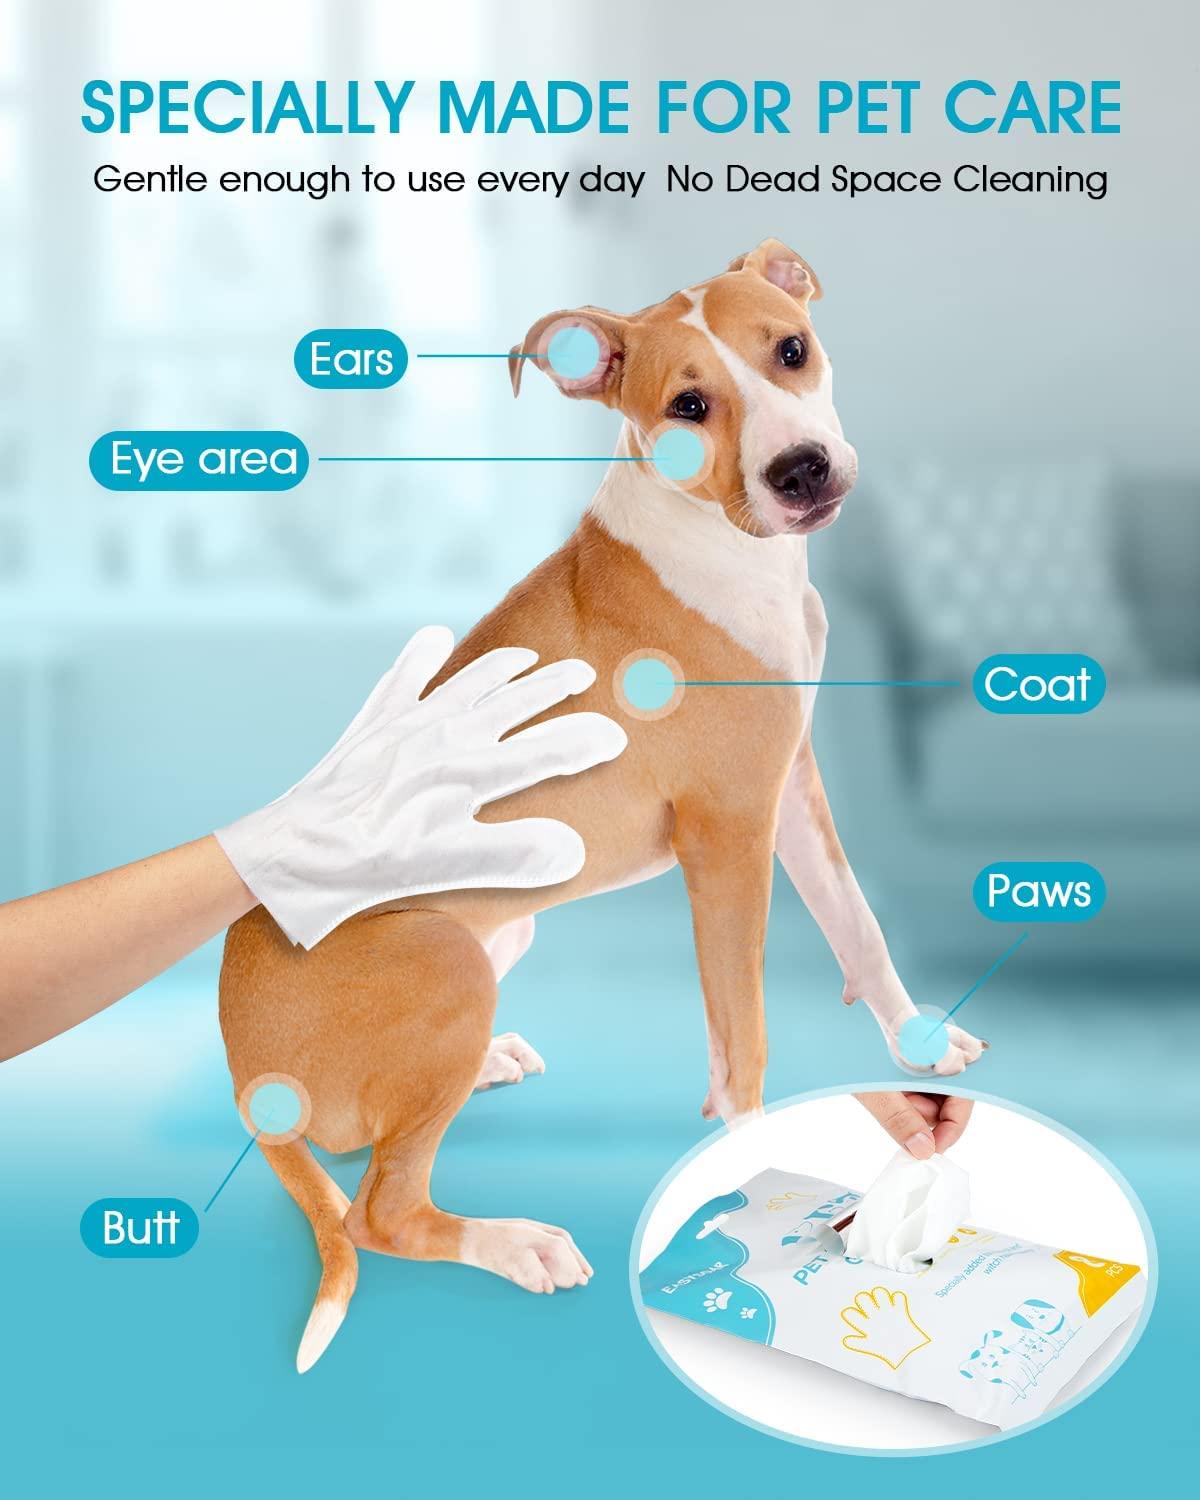 Best Dog Grooming & Cleaning Supplies in Kenya